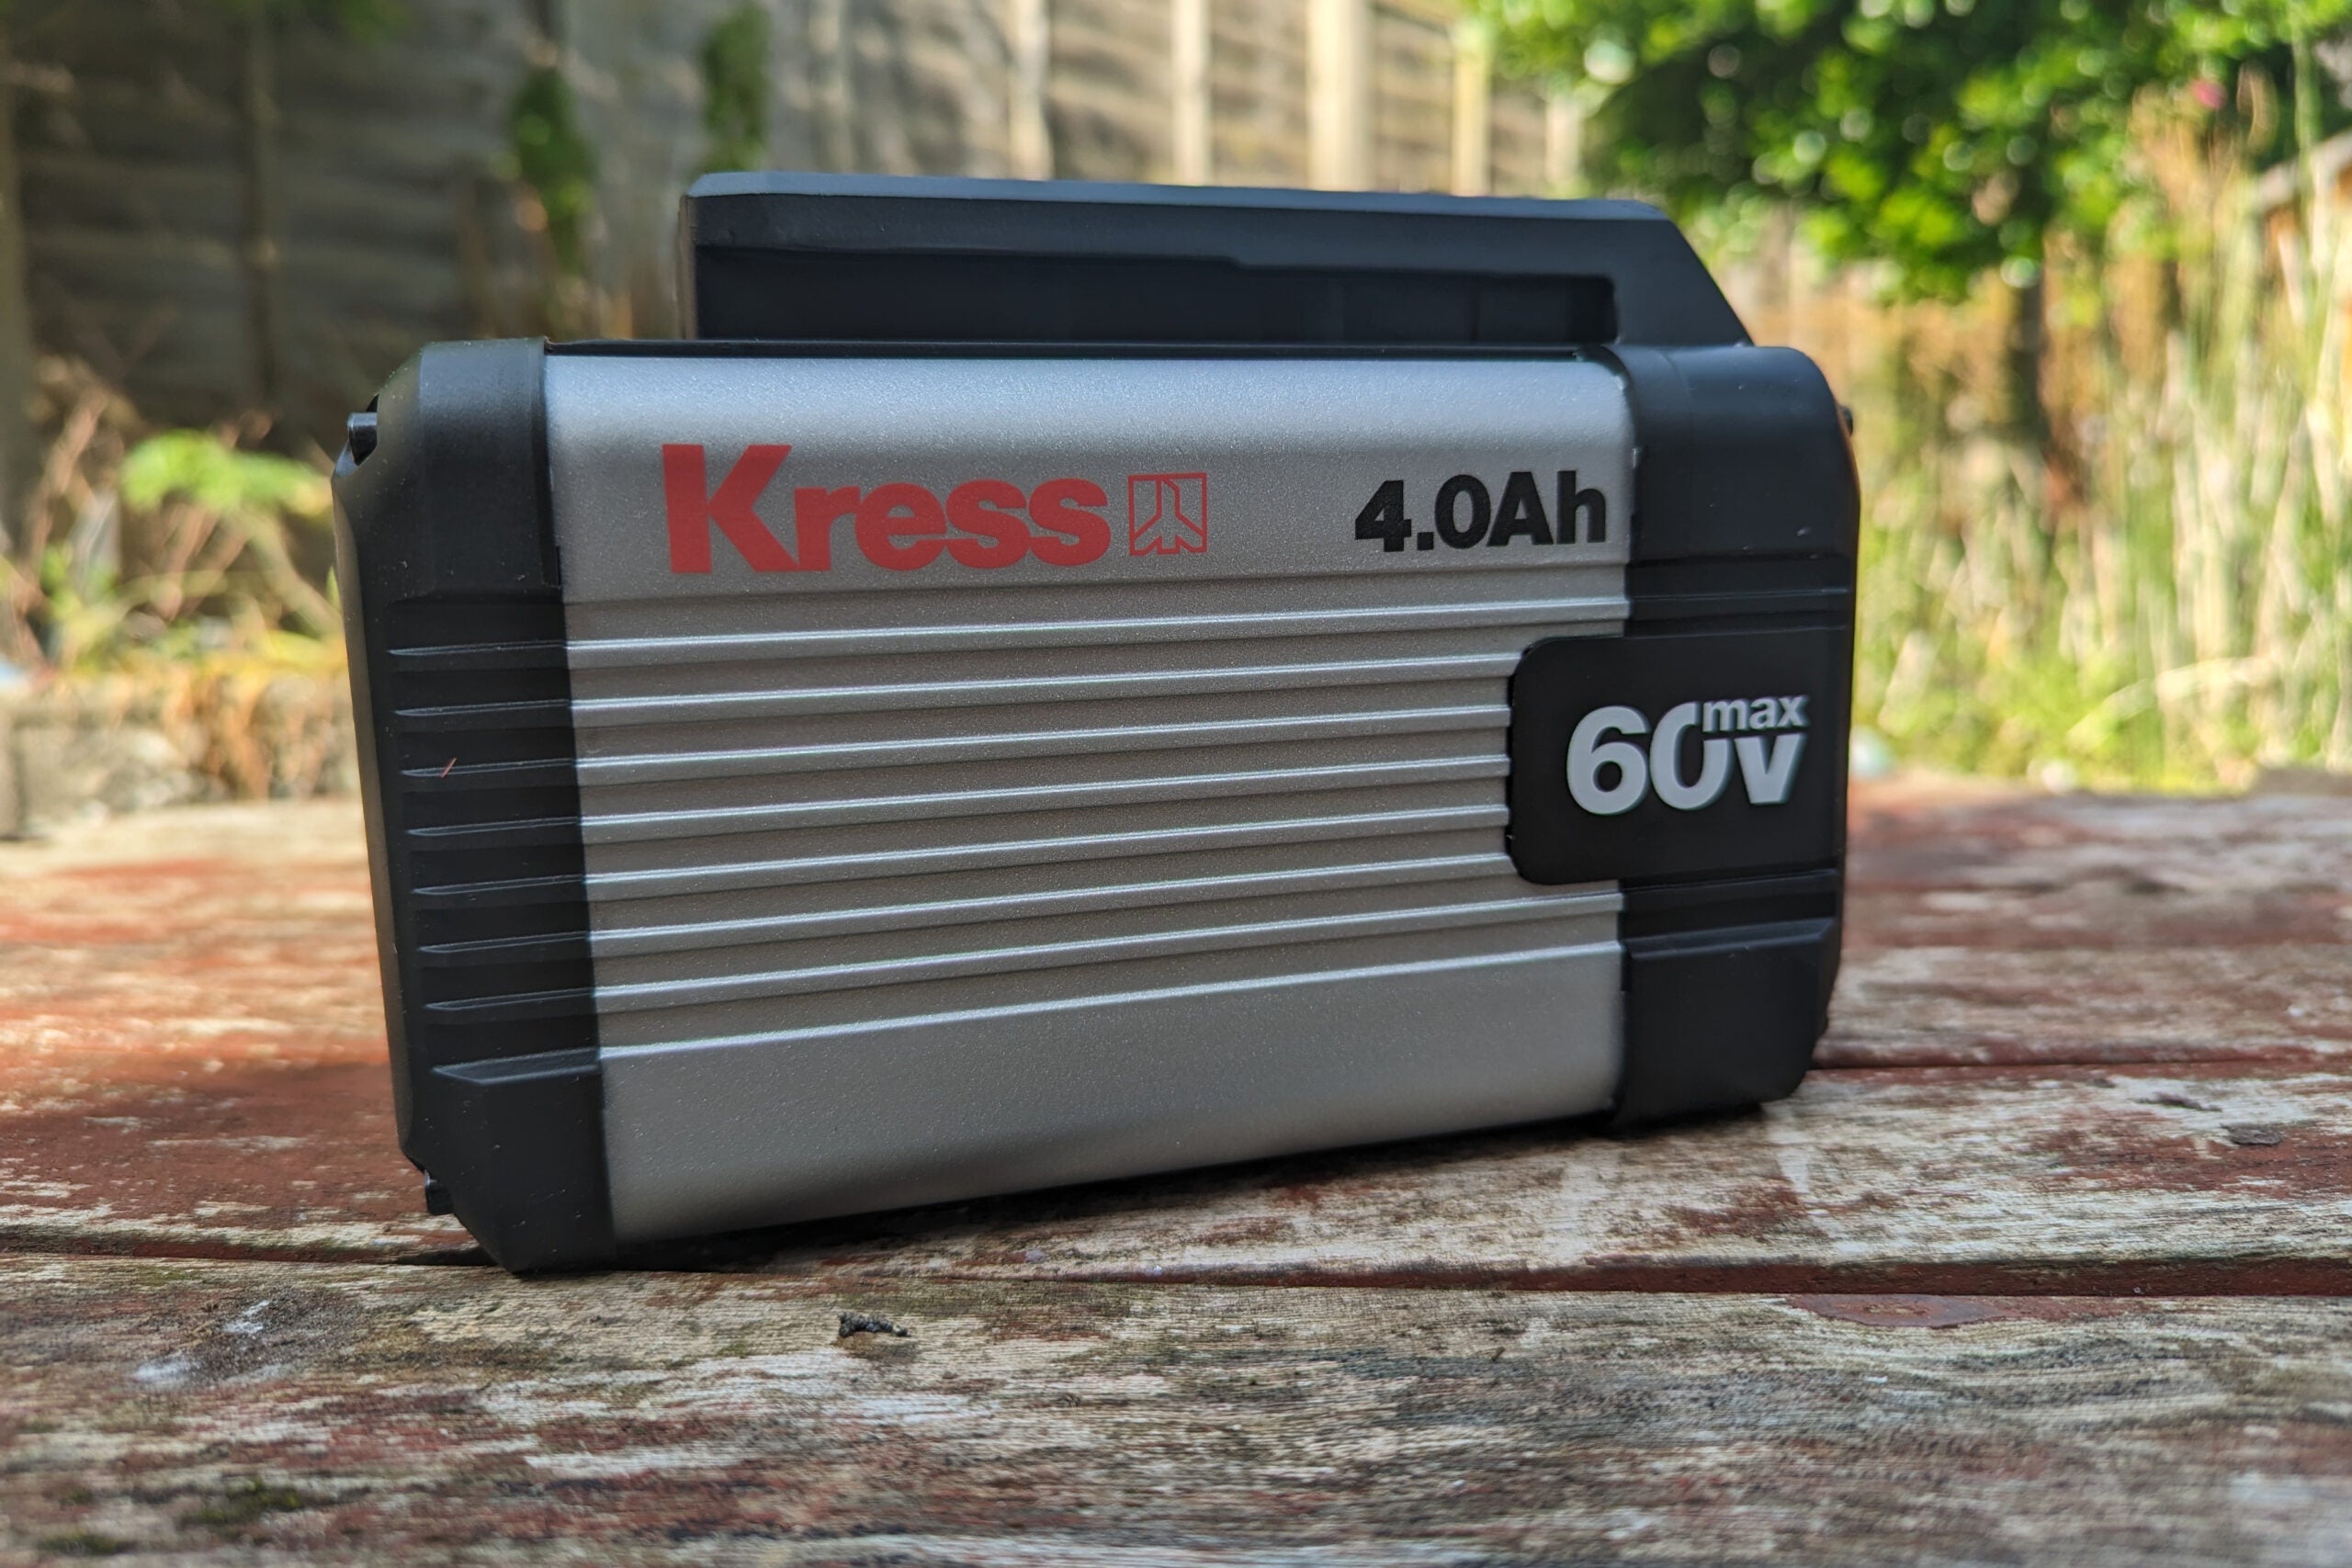 Tondeuse autotractée Kress 60V Max 46cm batterie KG757E.9